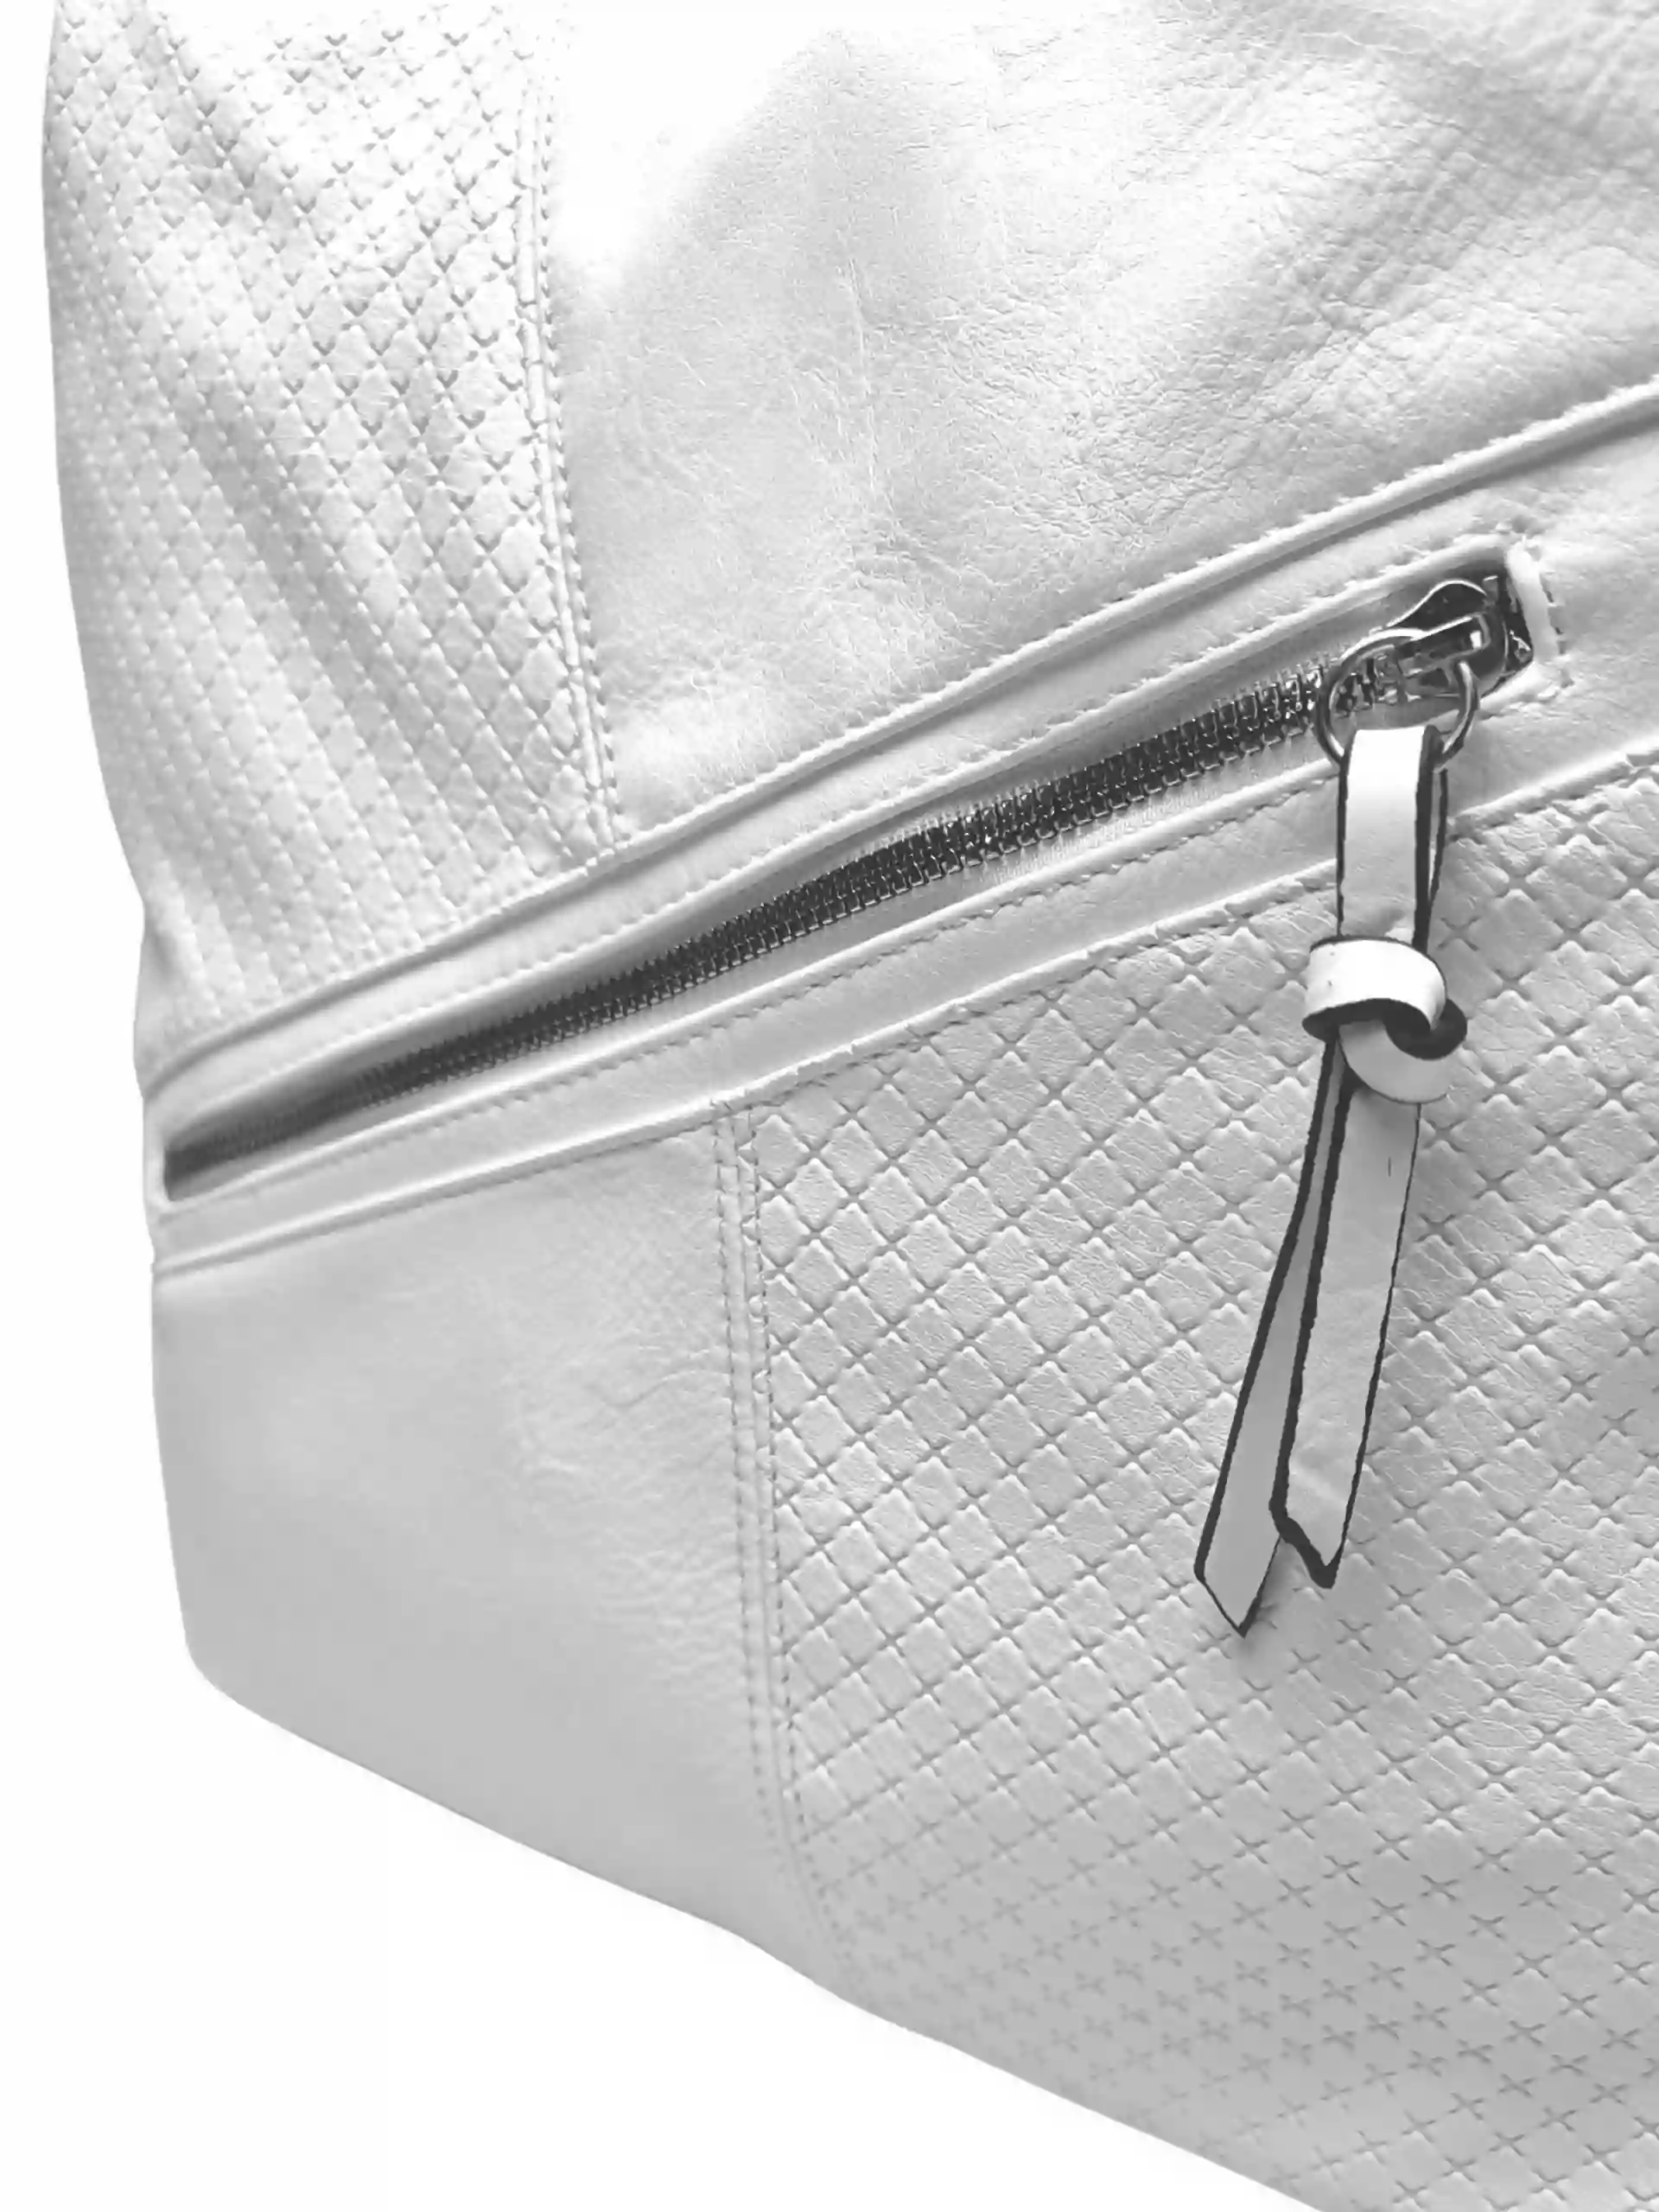 Velký bílý kabelko-batoh s šikmou kapsou, Tapple, H18077N+, detail kabelko-batohu 2v1